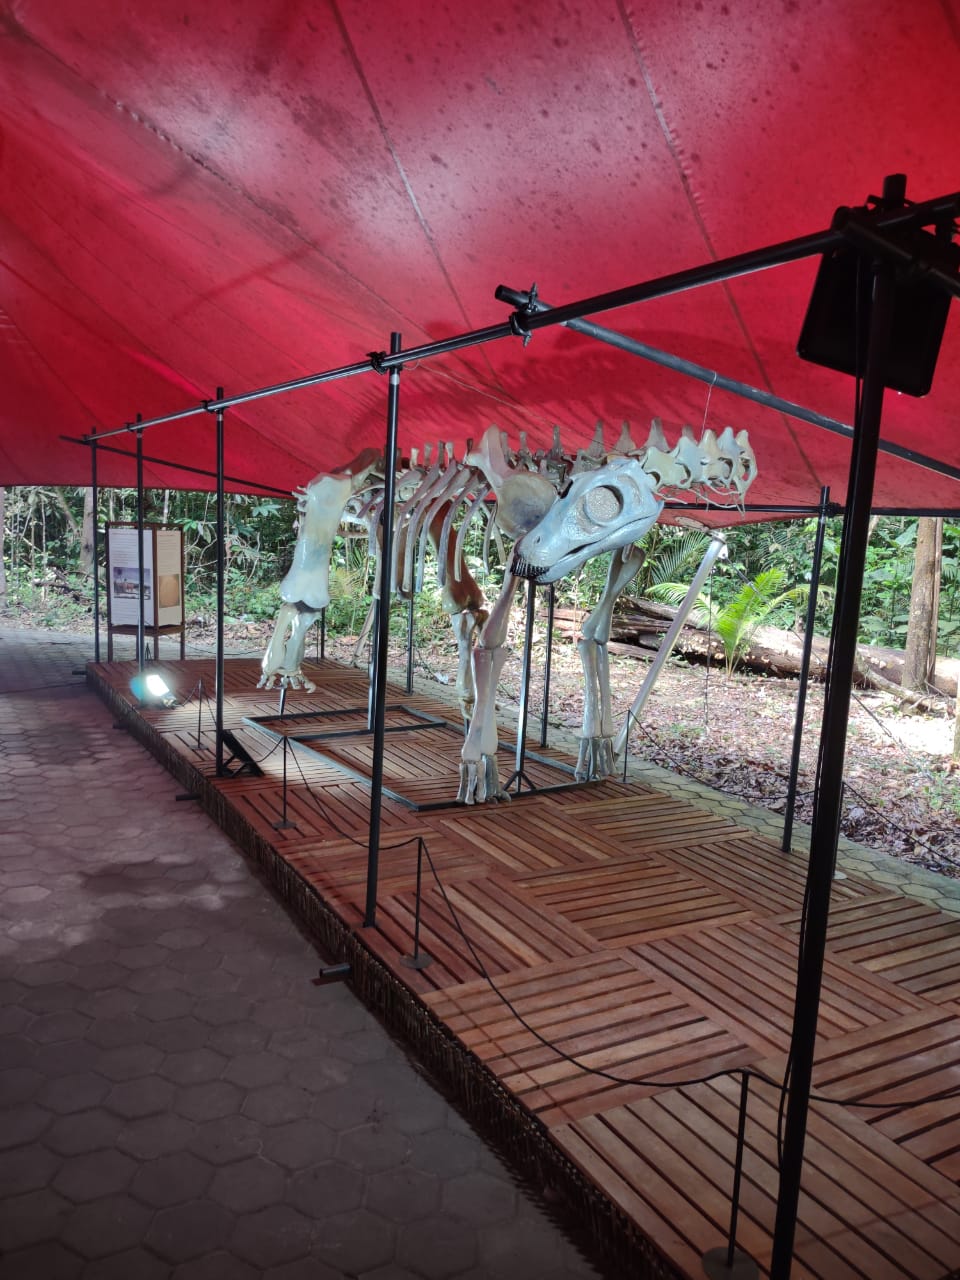 MUSA inaugura exposição inédita de gigantes extintos da Amazônia